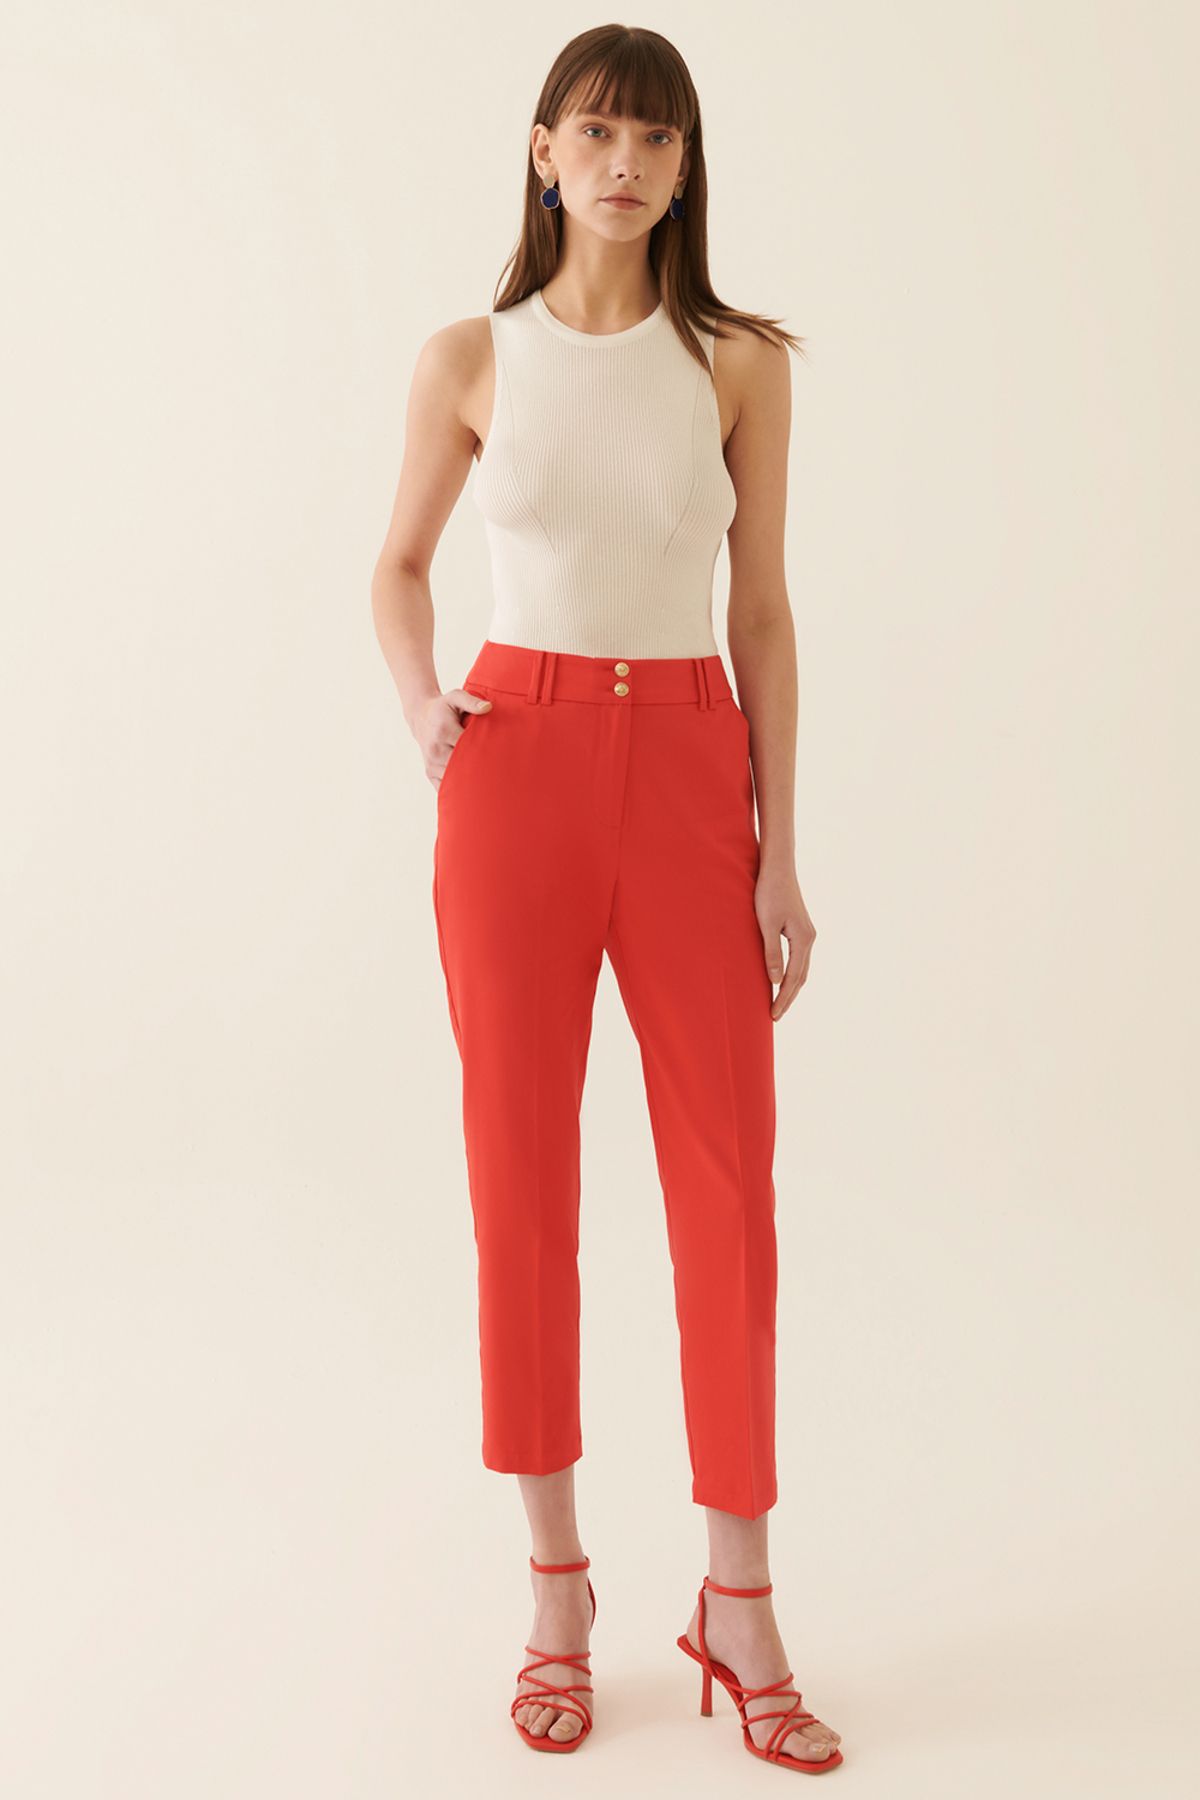 Perspective Elinsa Regular Fit Bilek Boy Orta Bel Kırmızı Renk Kadın Pantolon